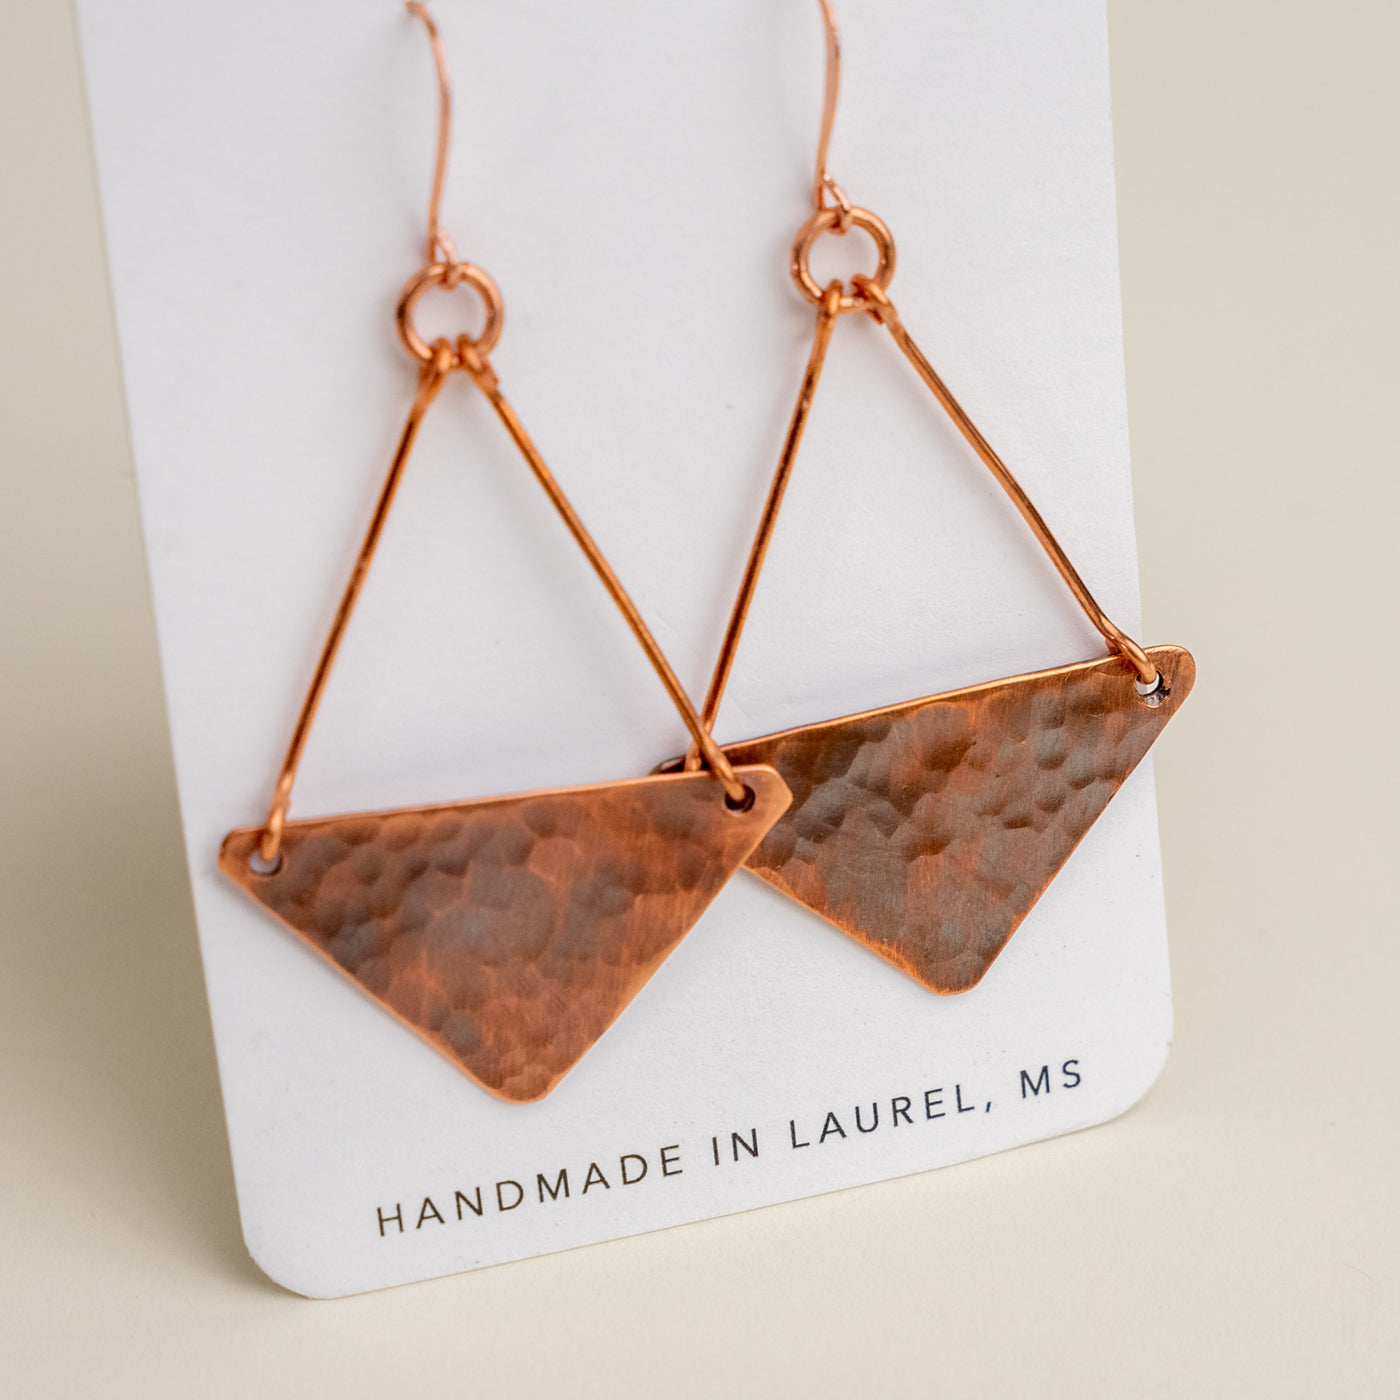 Novi Copper Diamond Full Dangle Earrings